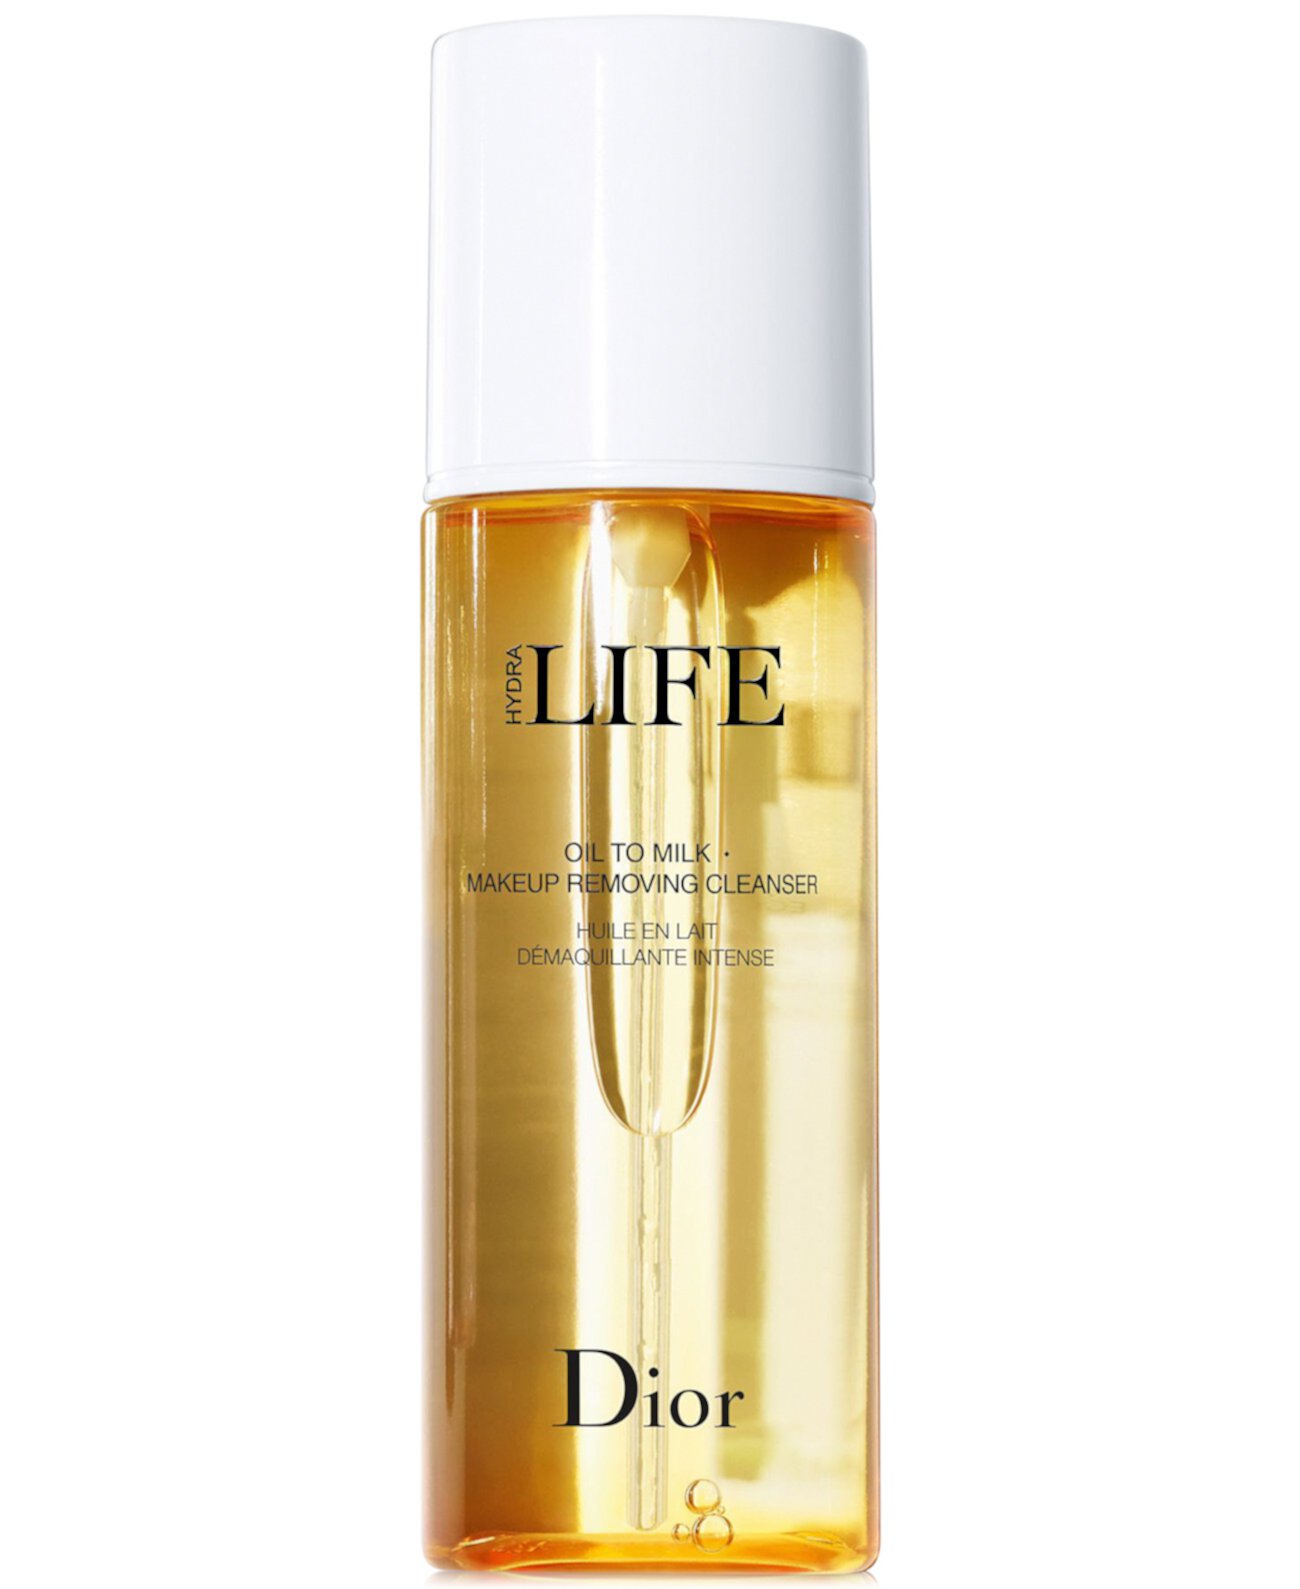 Hydra Life Oil To Milk Очищающее средство для снятия макияжа, 6,7 унций. Dior